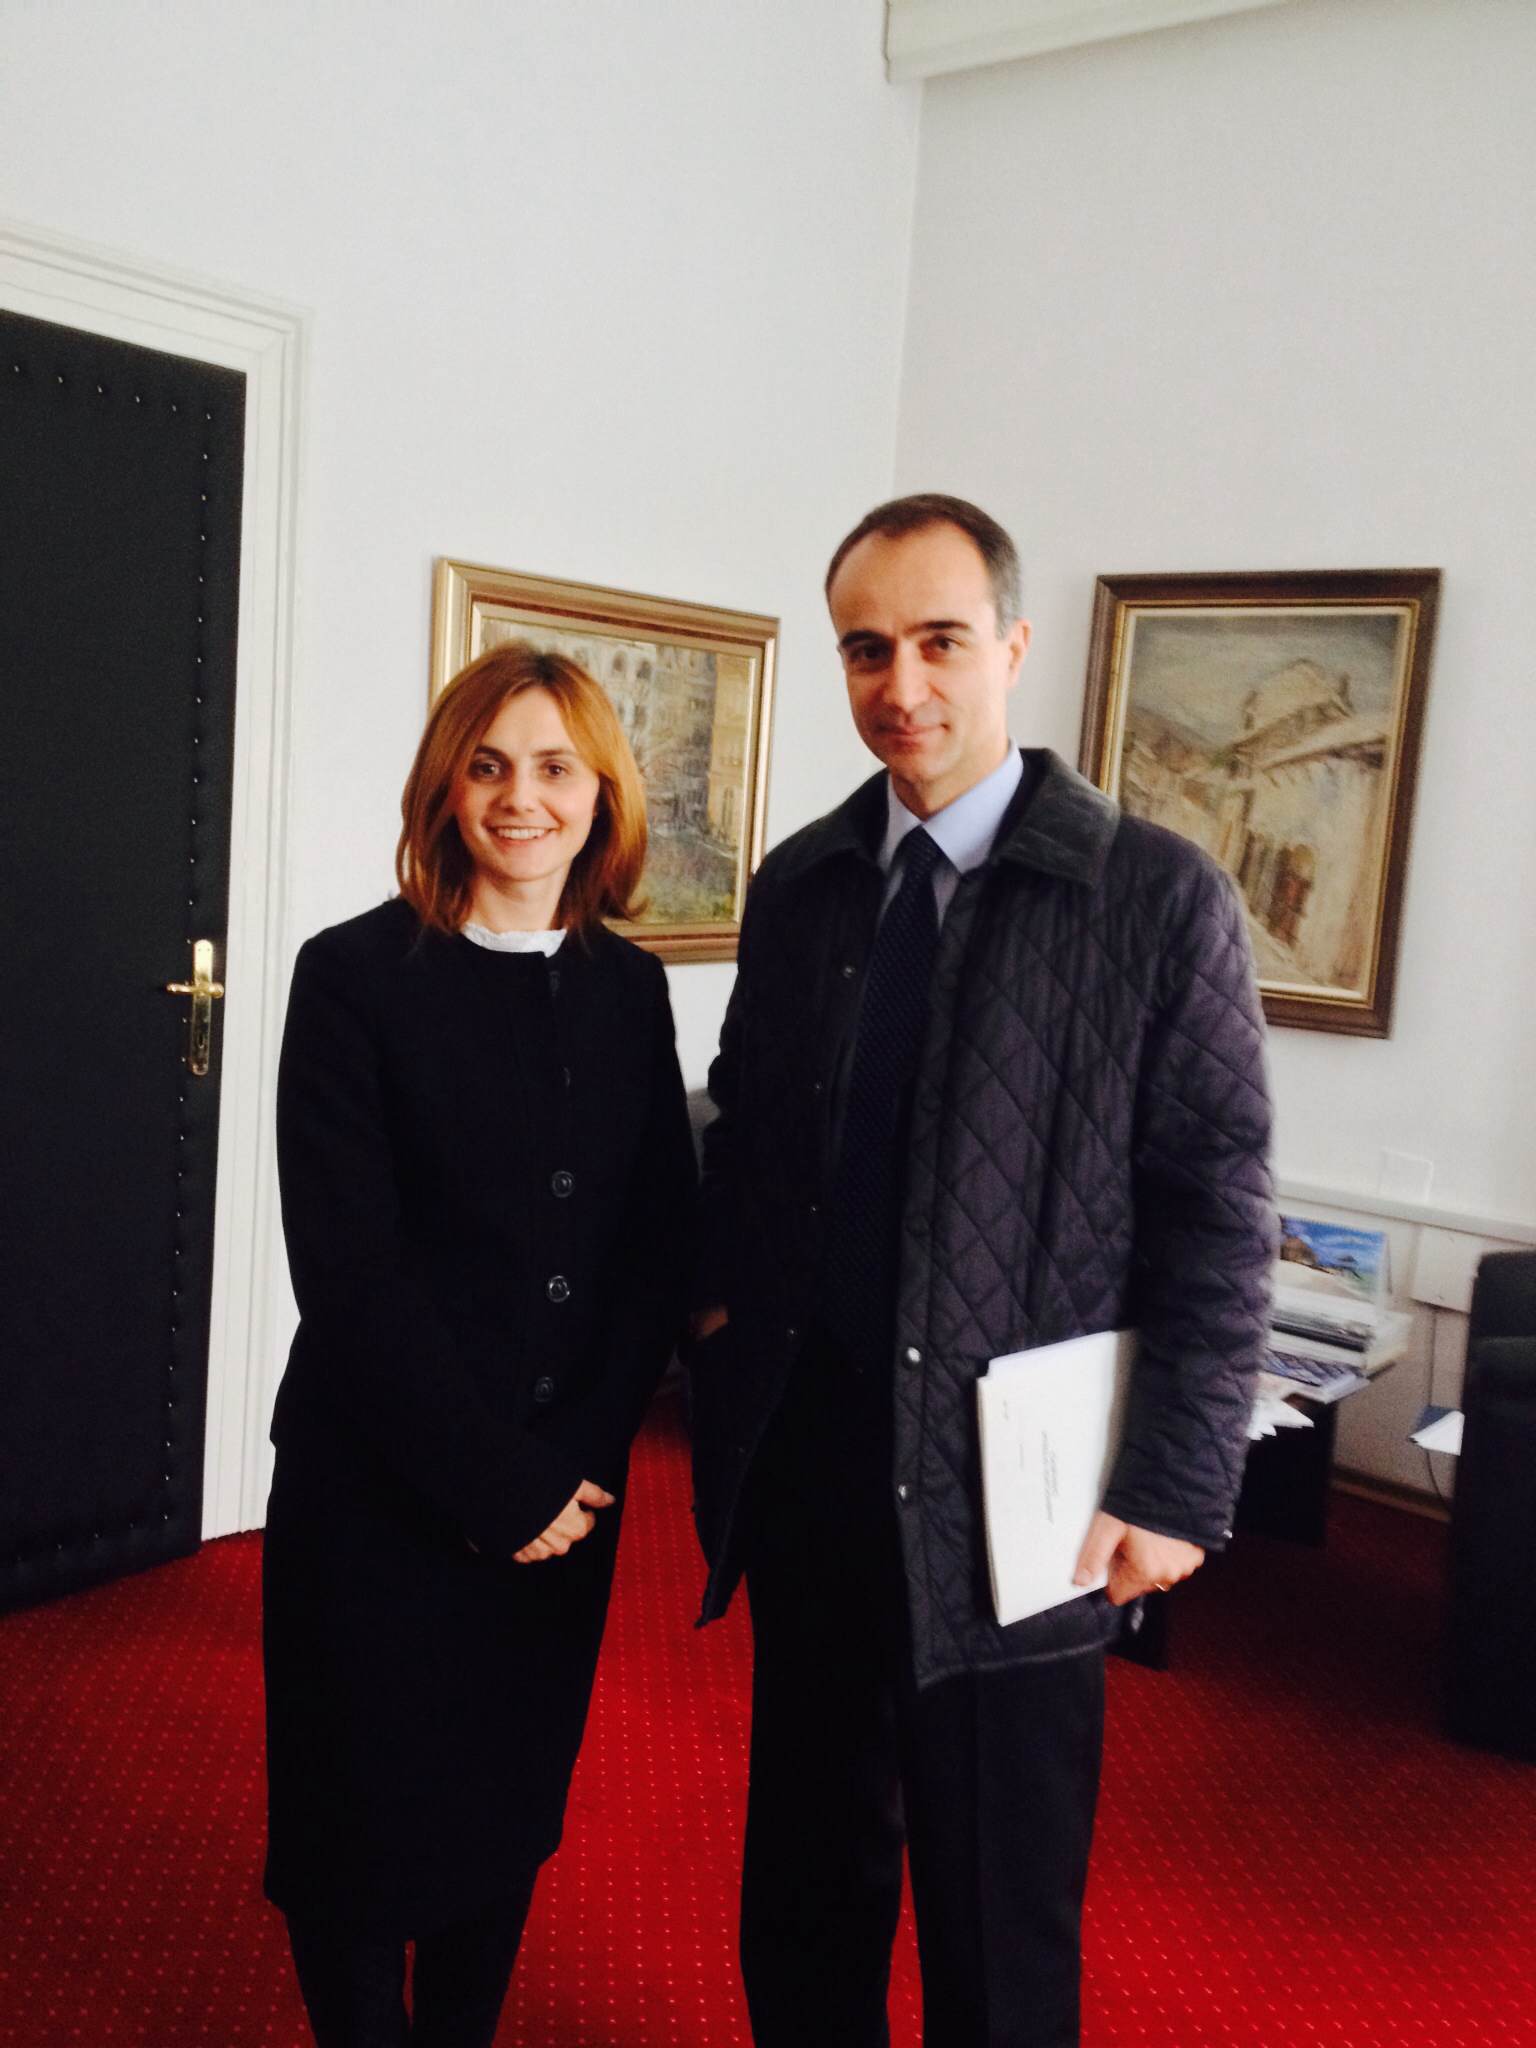 Picture for Zamjenica ministra gđa Ermina Salkičević-Dizdarević na sastanaku s veleposlanikom Italije u Bosni i Hercegovini 